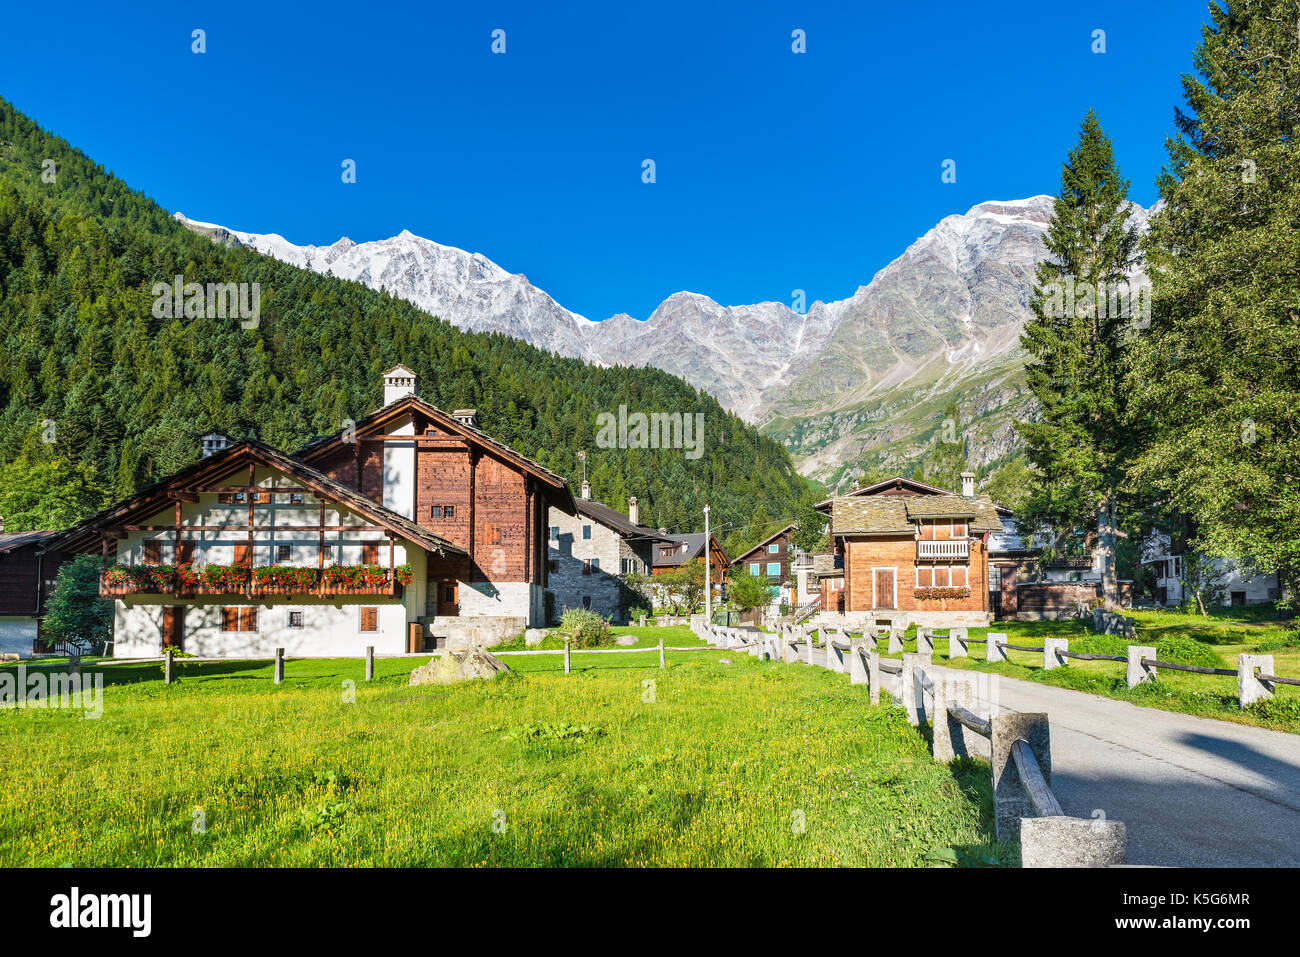 Malerische und typisch alpine Village, Italien. Macugnaga (Staffa), touristisches Dorf mit Holz- und Steinhäuser am Fuße des Monte Rosa Stockfoto